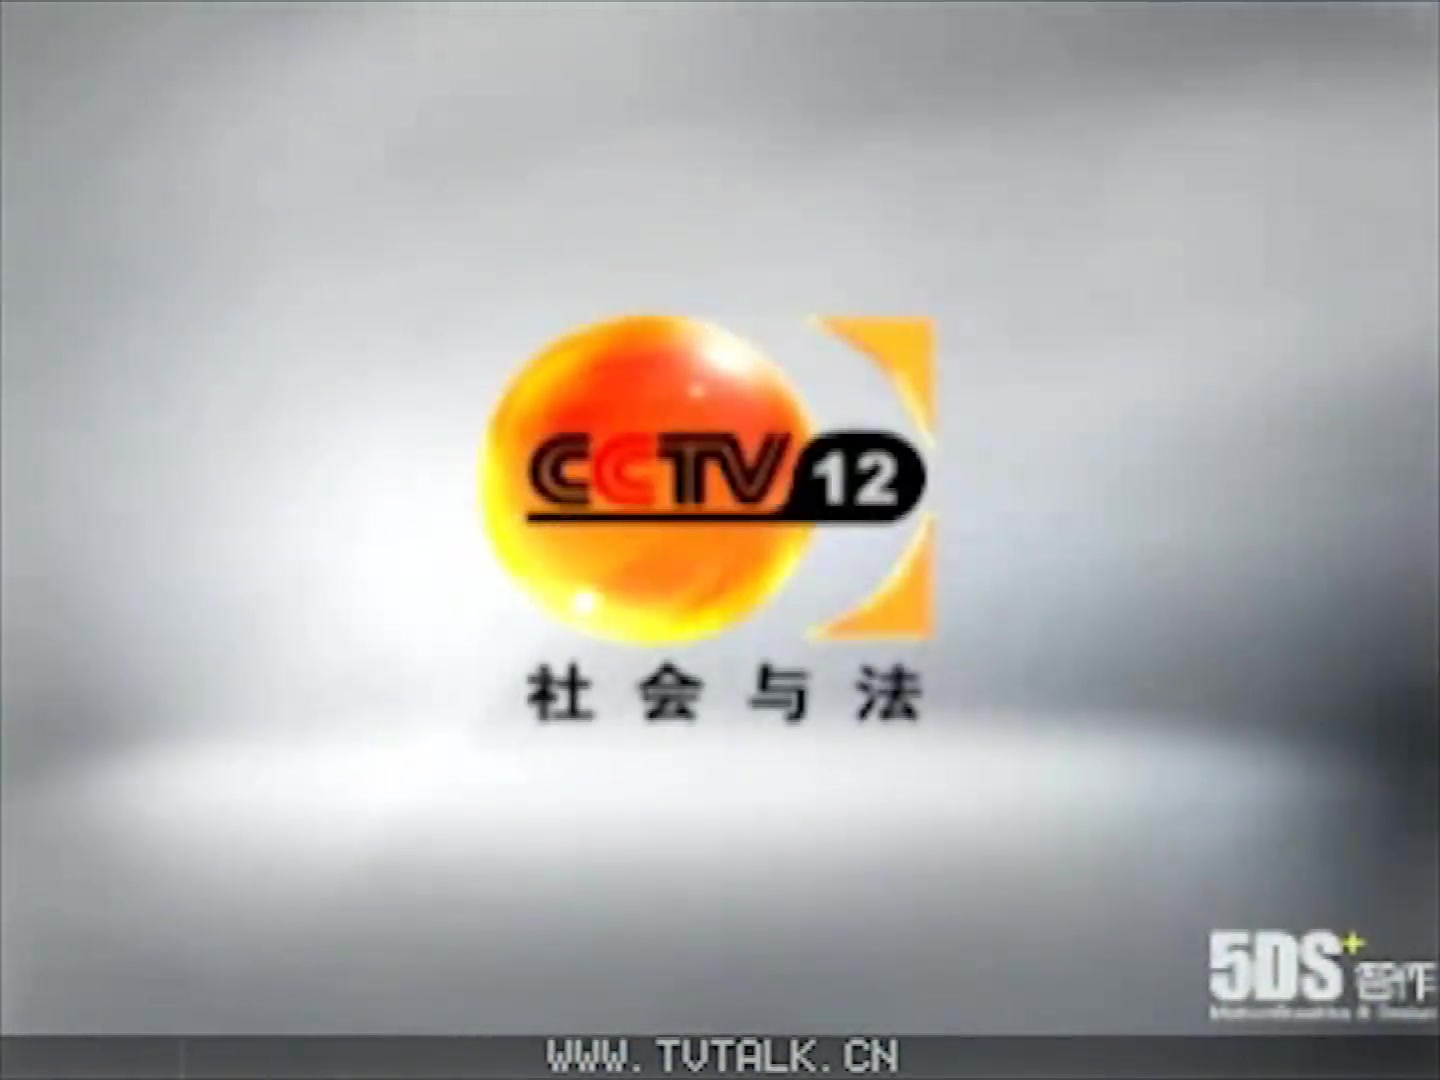 【放送文化】cctv12社会与法频道2008版整体包装系列(制作方版)